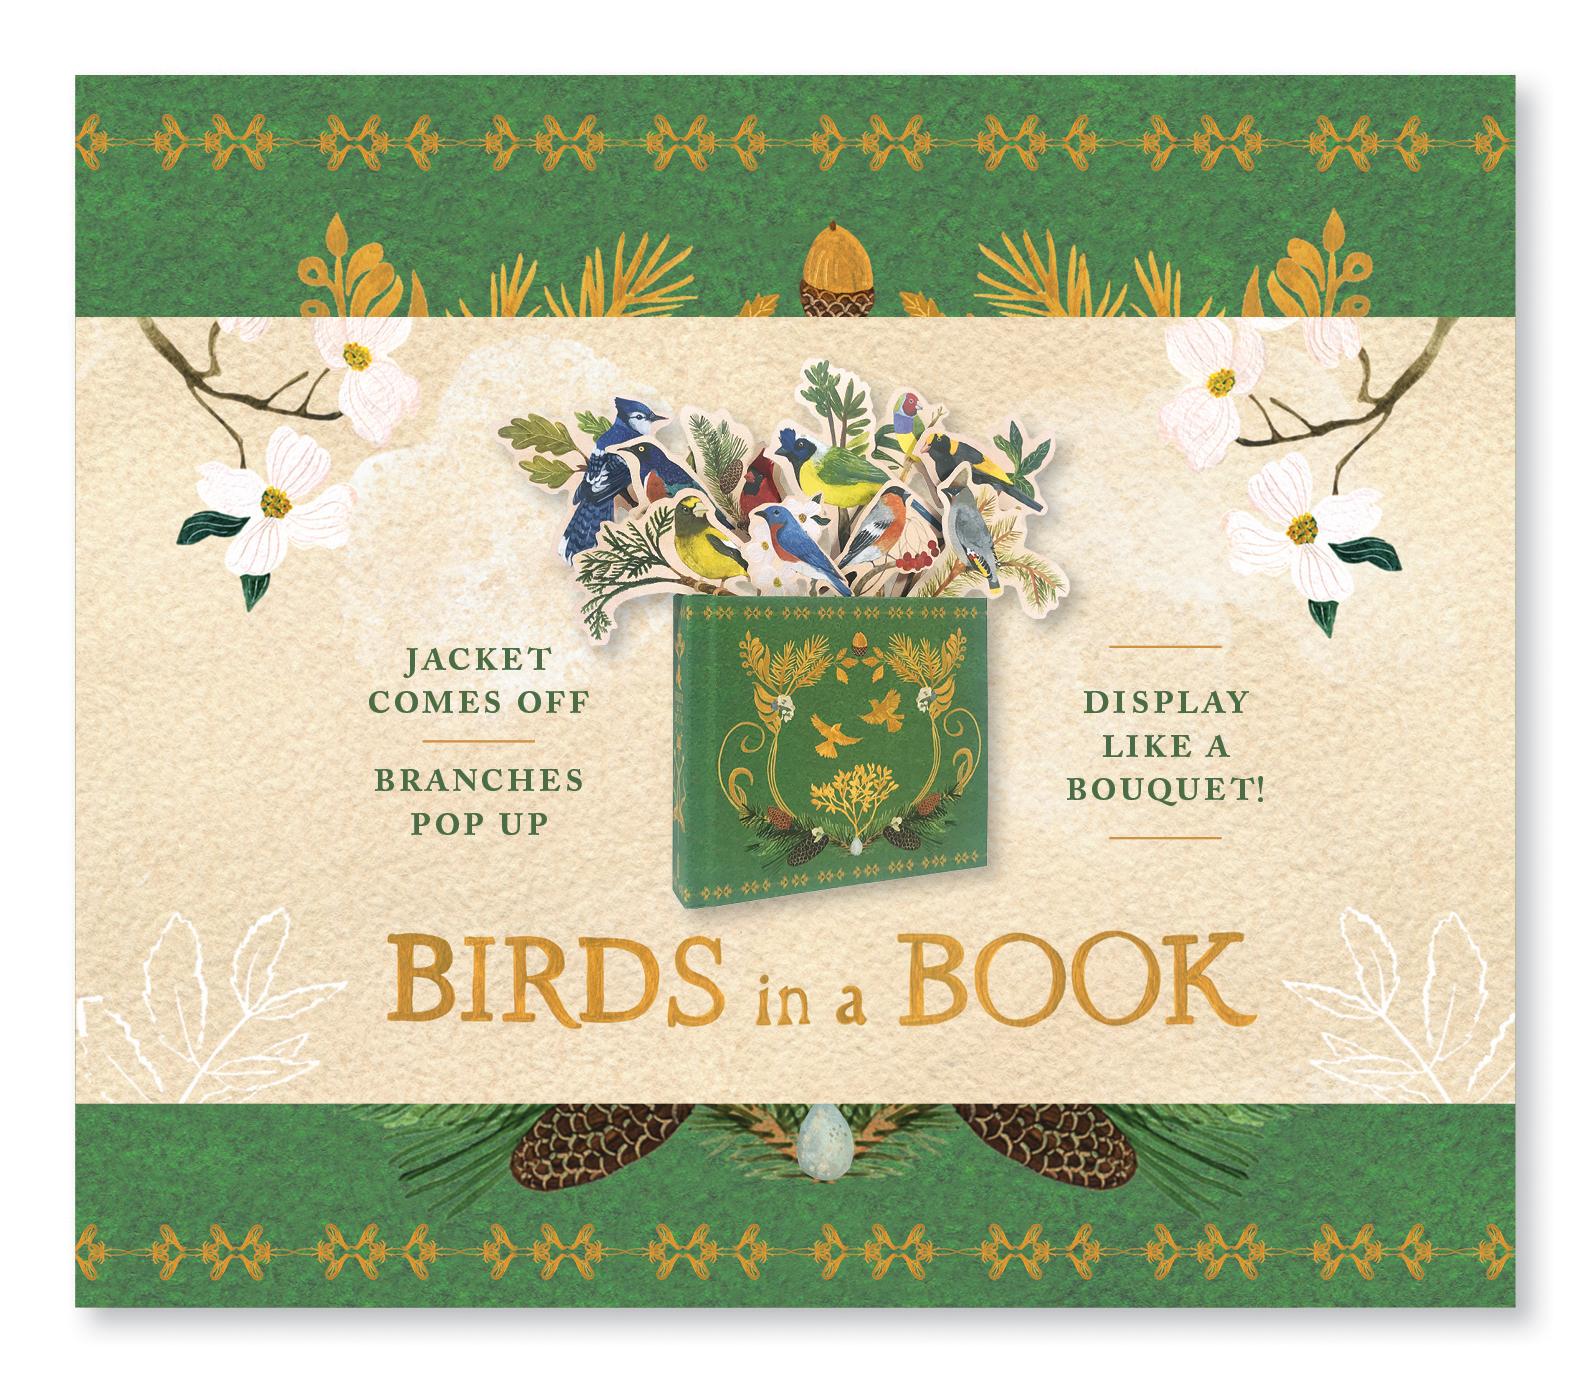 Bouquet in a Book: Birds in a Book